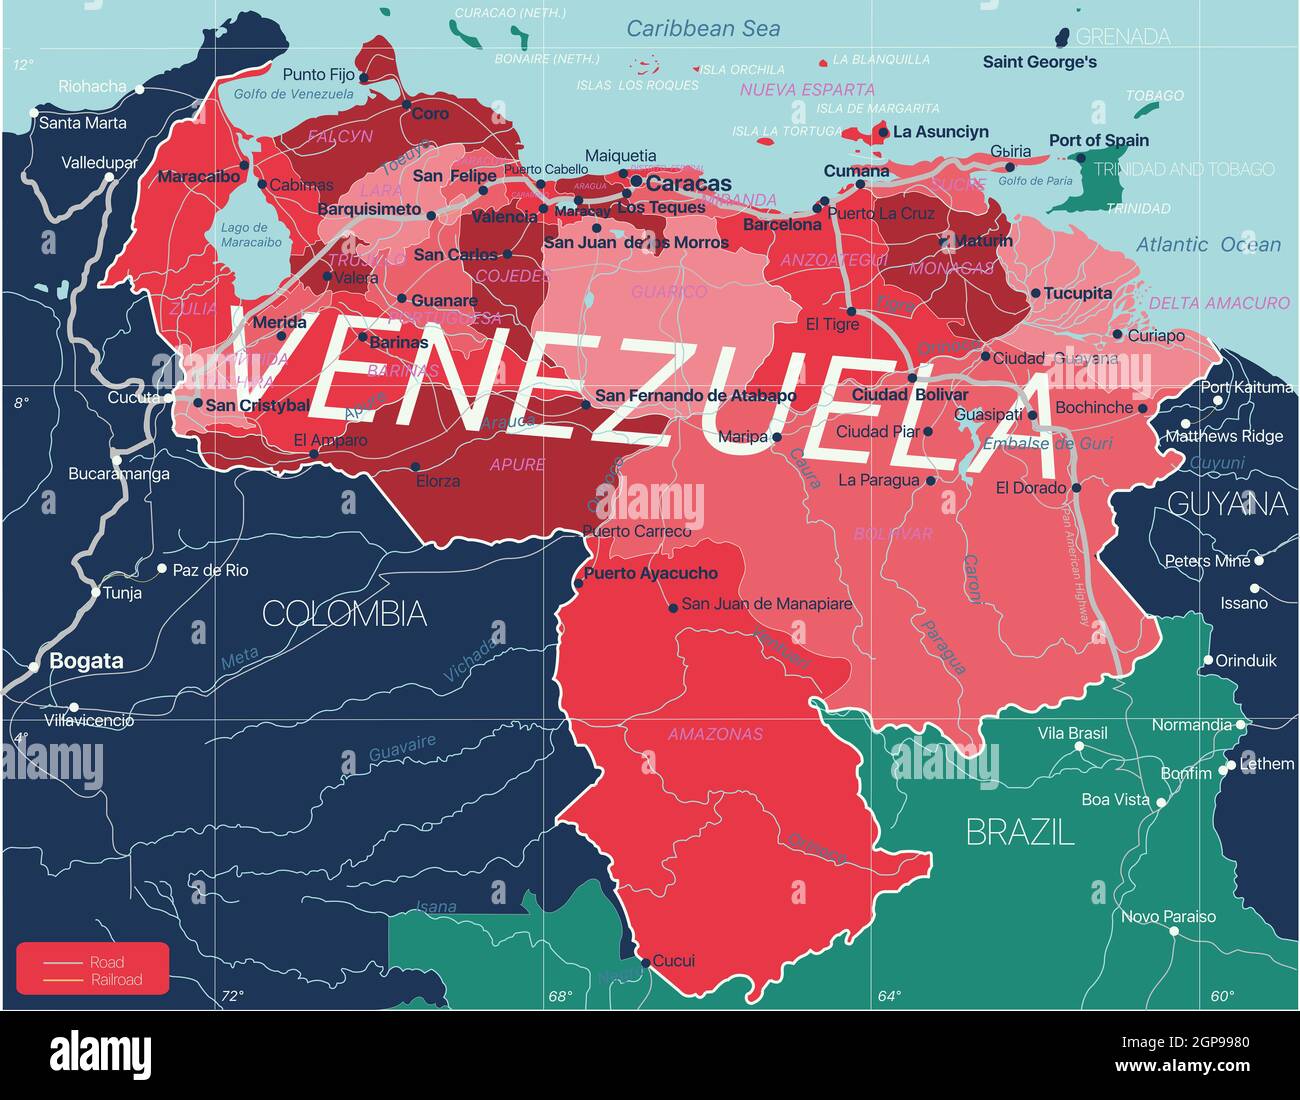 Venezuela carte détaillée modifiable avec régions villes, routes et chemins de fer, sites géographiques. Fichier vectoriel EPS-10 Banque D'Images